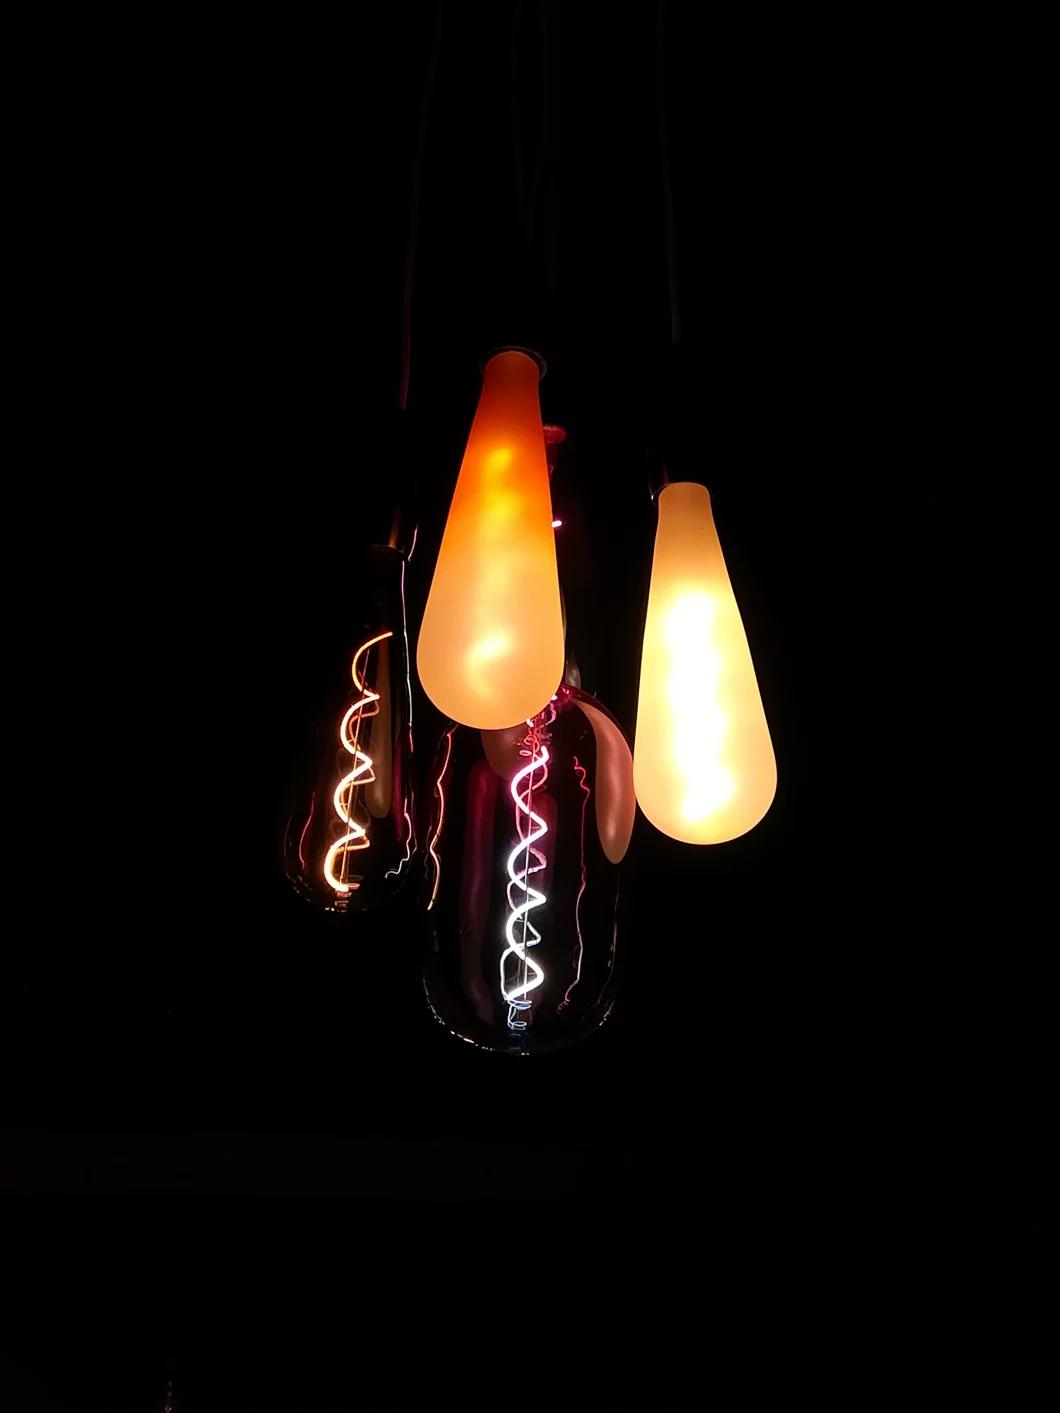 Drop-Shaped Gradient Glass Colour Fashion Decorative LED Light Bulb